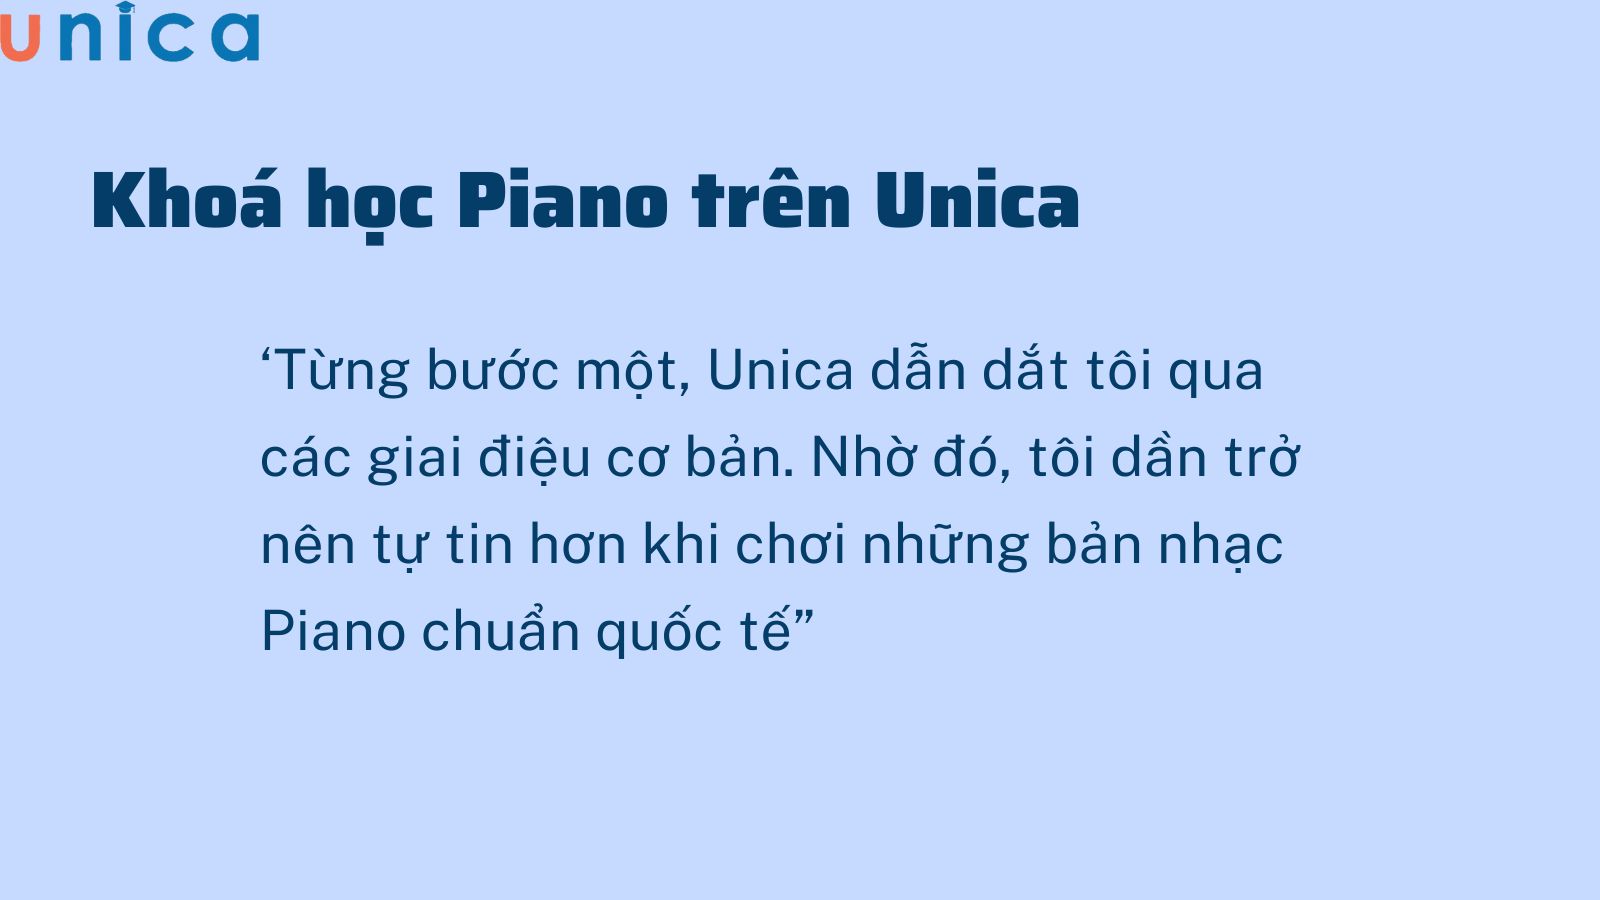 Piano trở nên đơn giản hơn khi học khoá cơ bản trên Unica